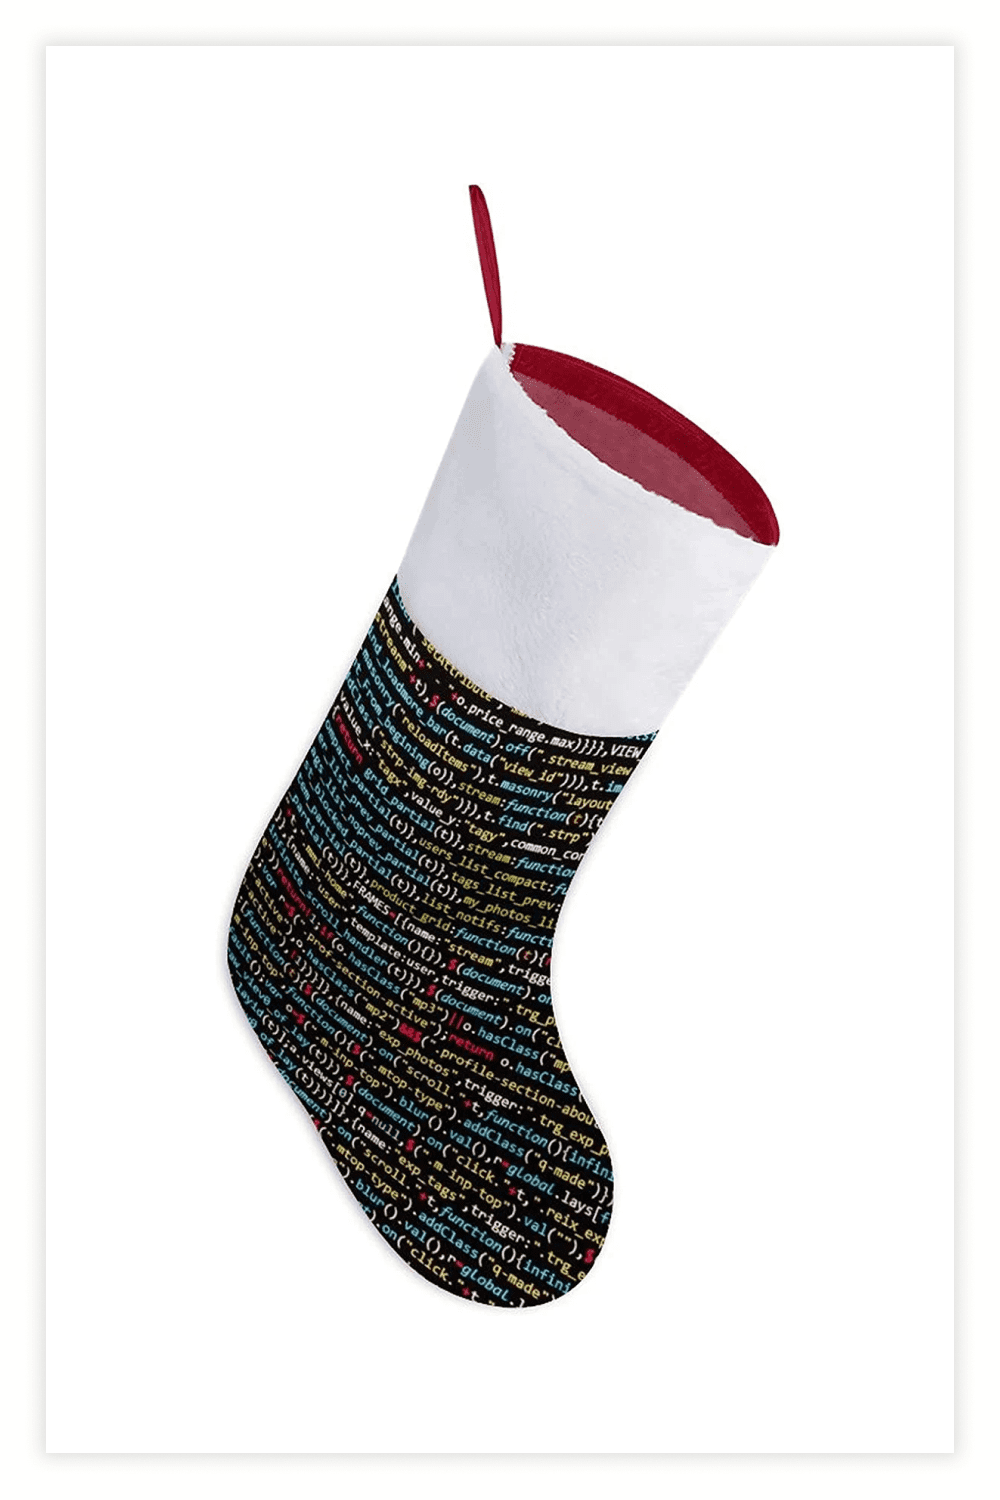 Christmas gift sock with program code on it.